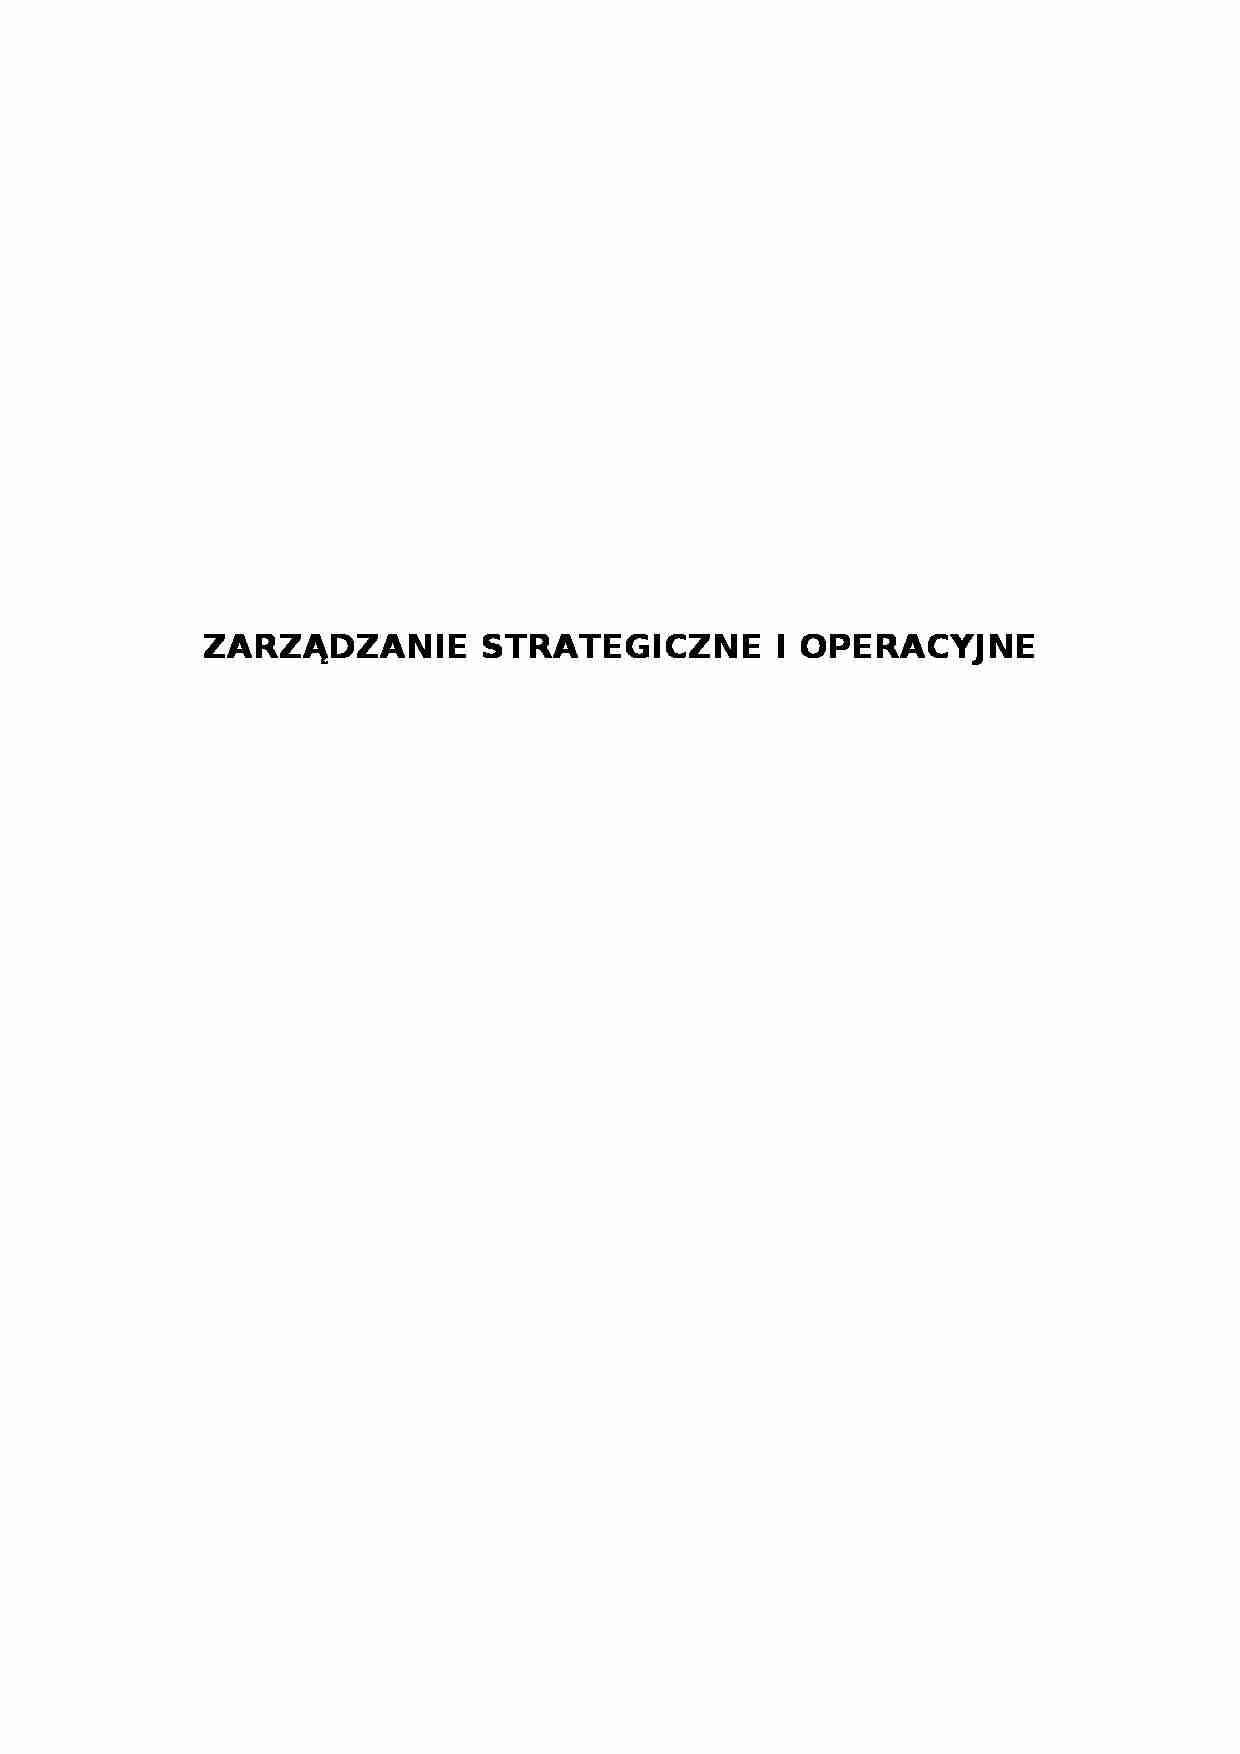 Zarządzanie strategiczne i operacyjne - strona 1